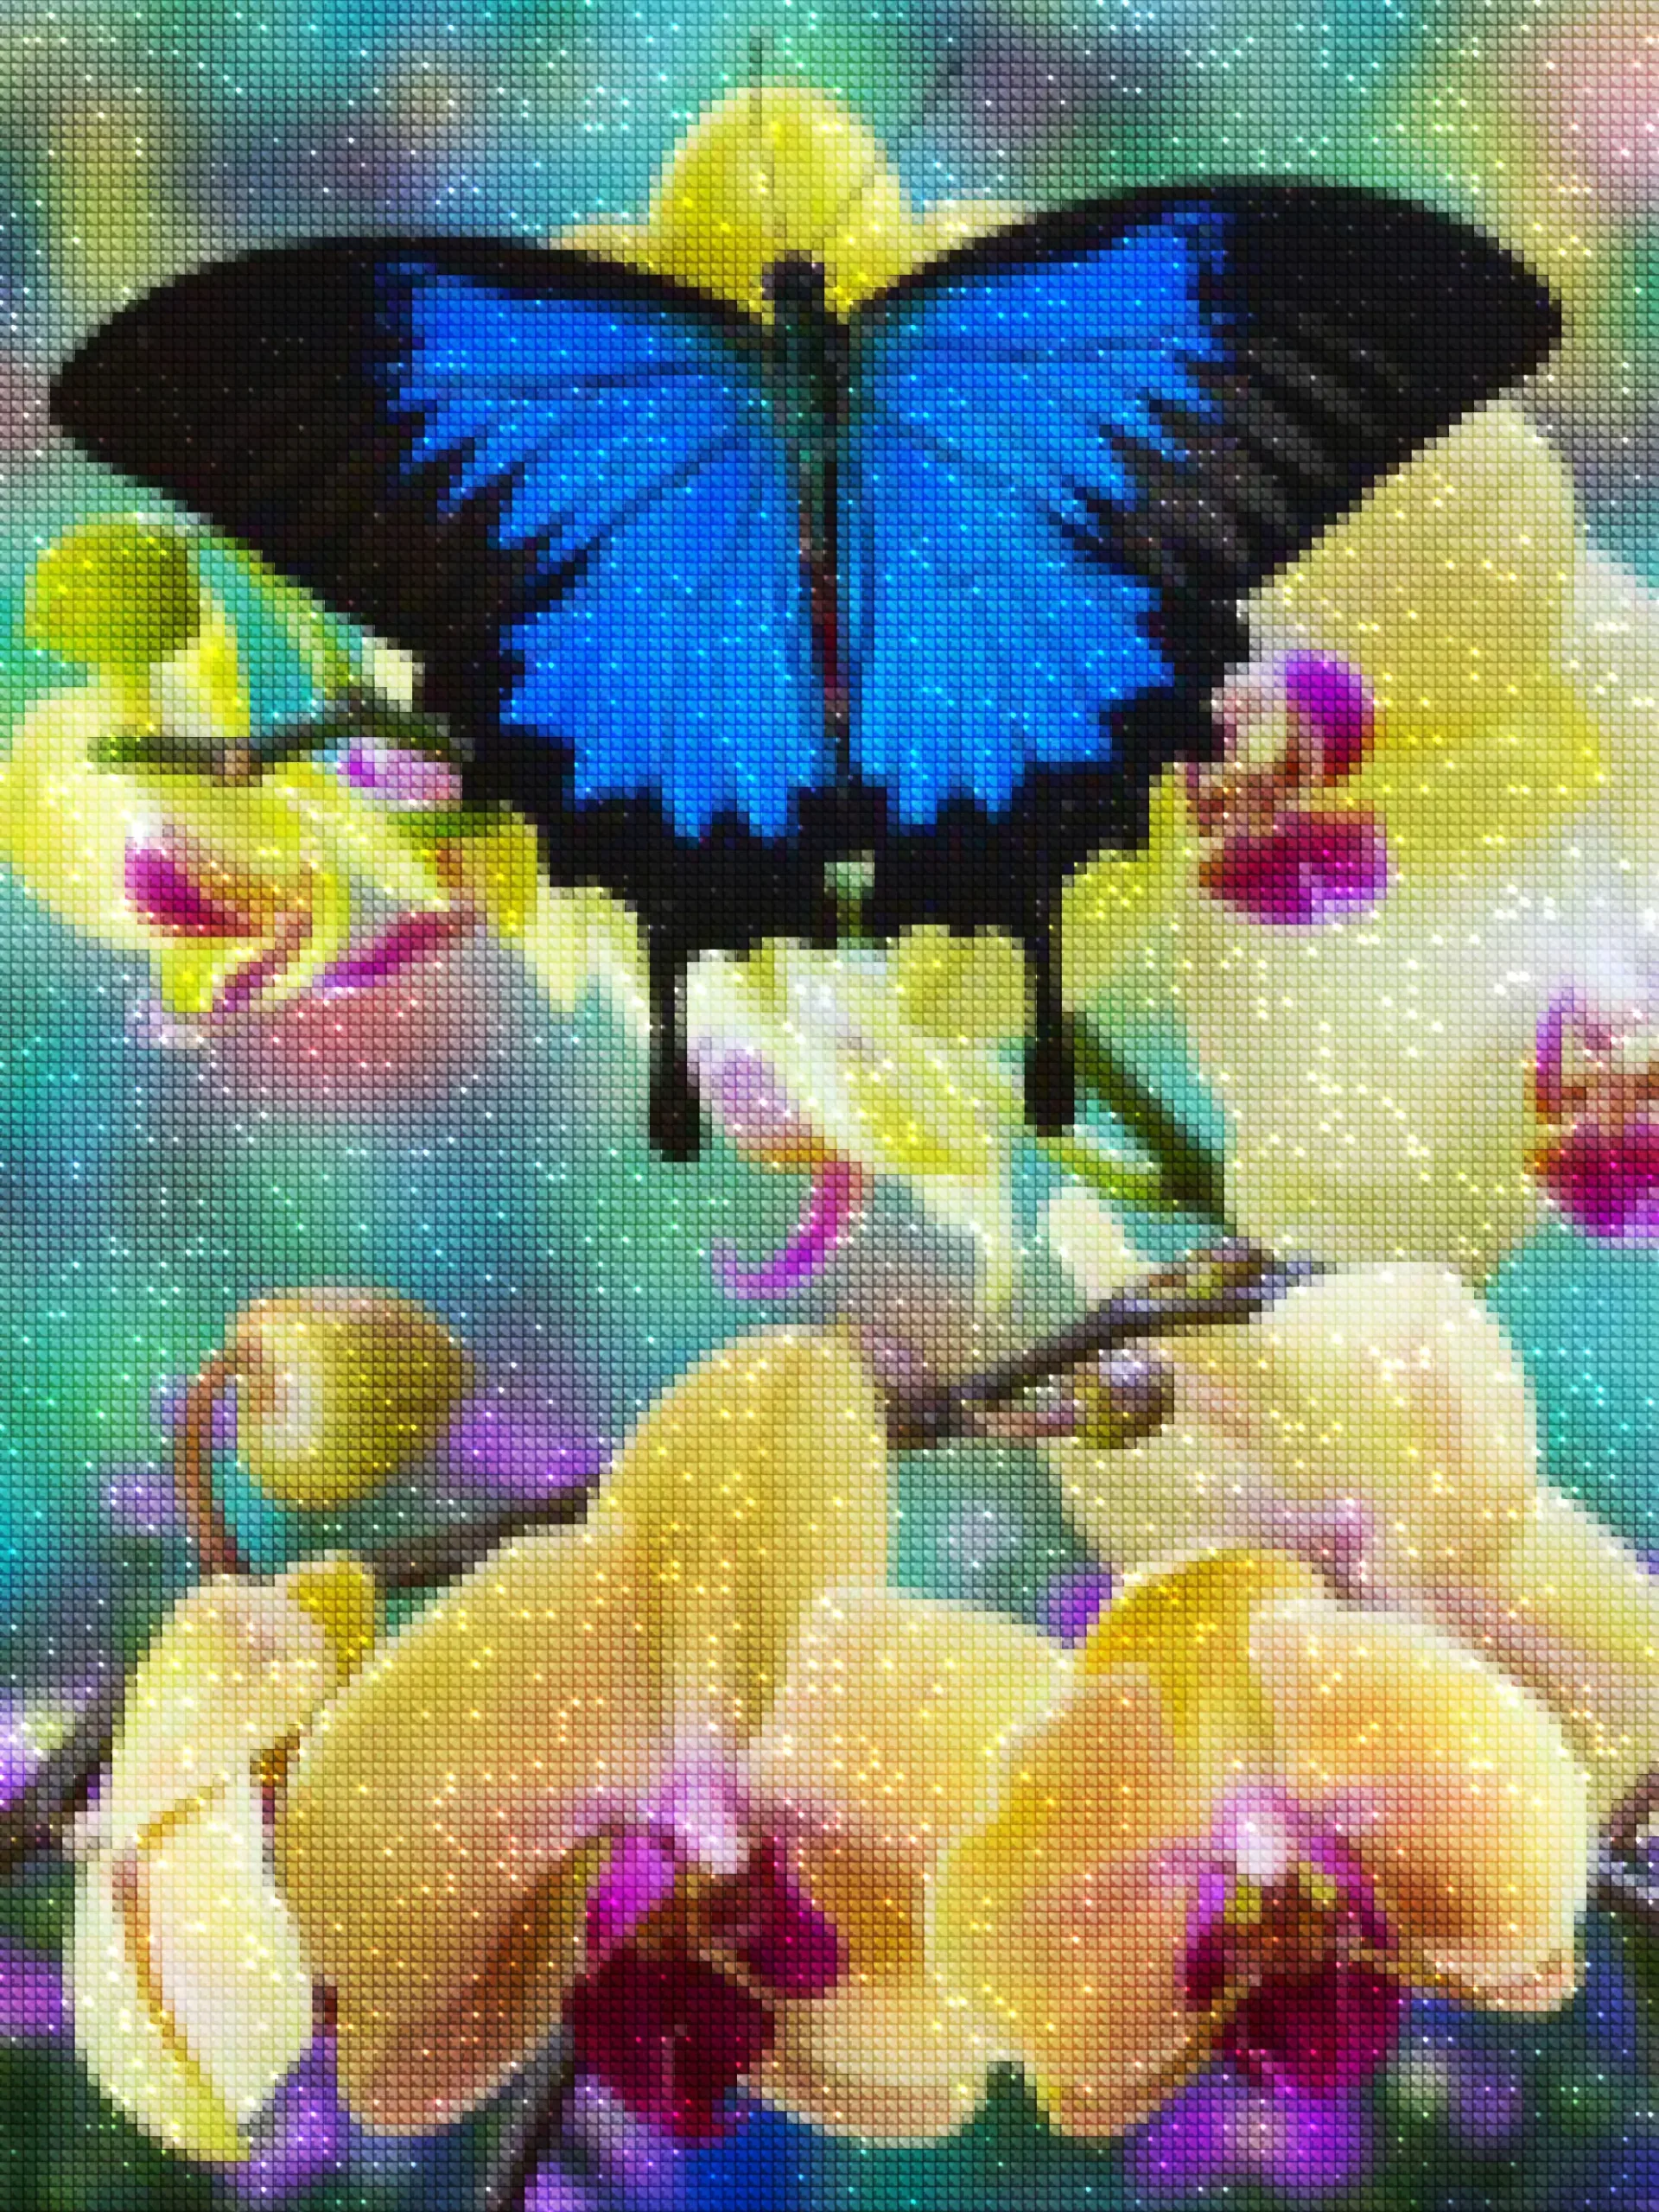 diamanten-wizard-diamond-painting-kits-Natuur-Vlinder-De Blauwe Vlinder op de Orchidee-diamonds.webp